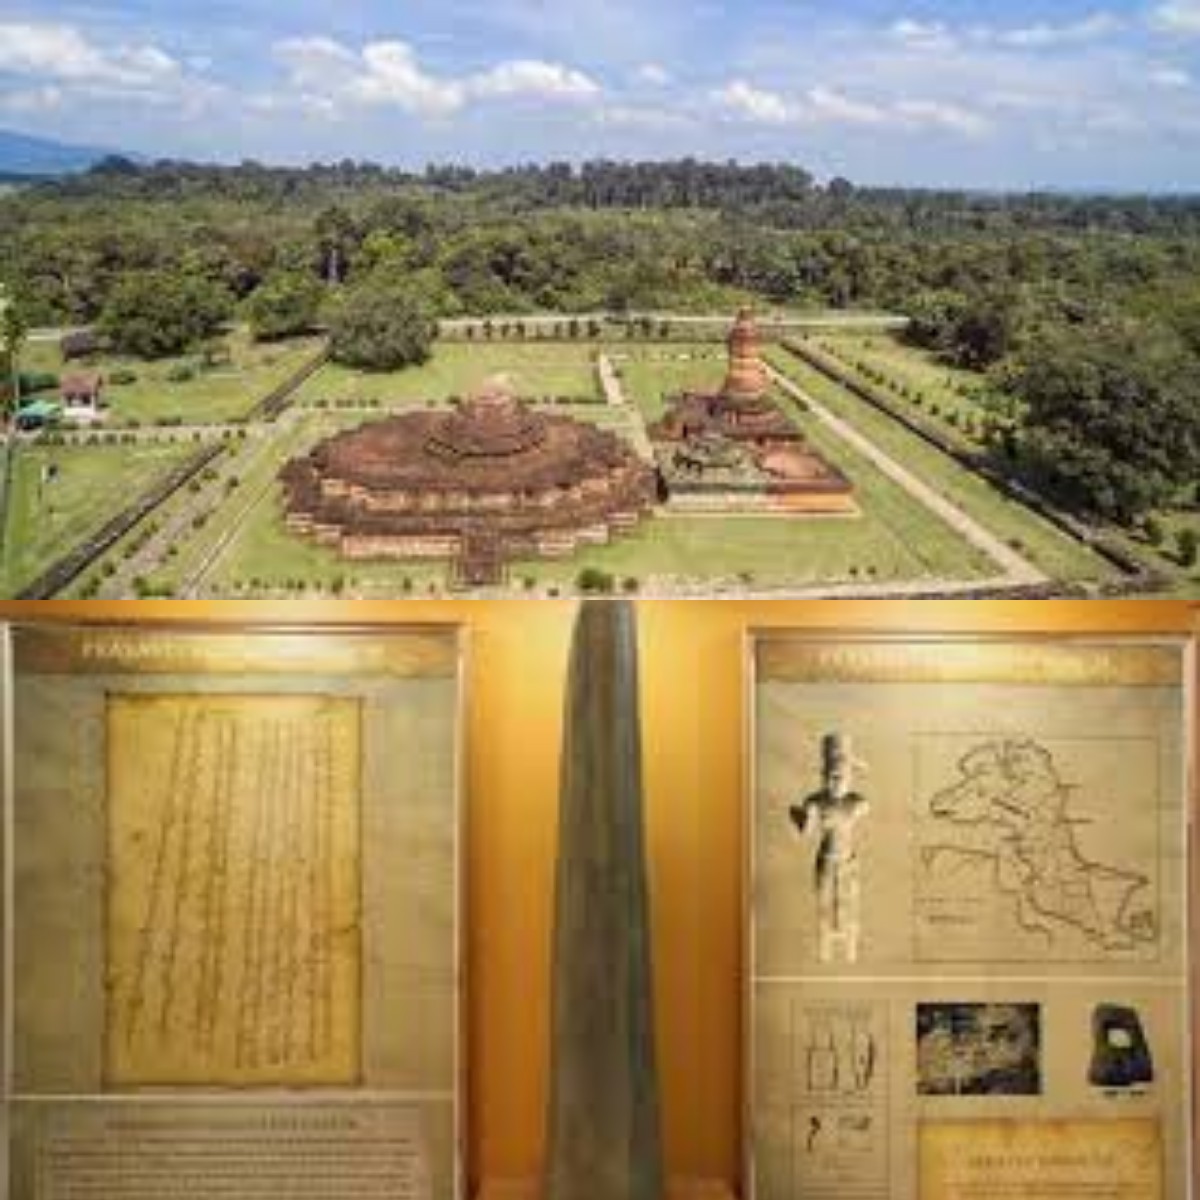 Menganl Sejarah! Inilah 10 Daftar Peninggan Bersejarah dari Kerajaan Sriwijaya